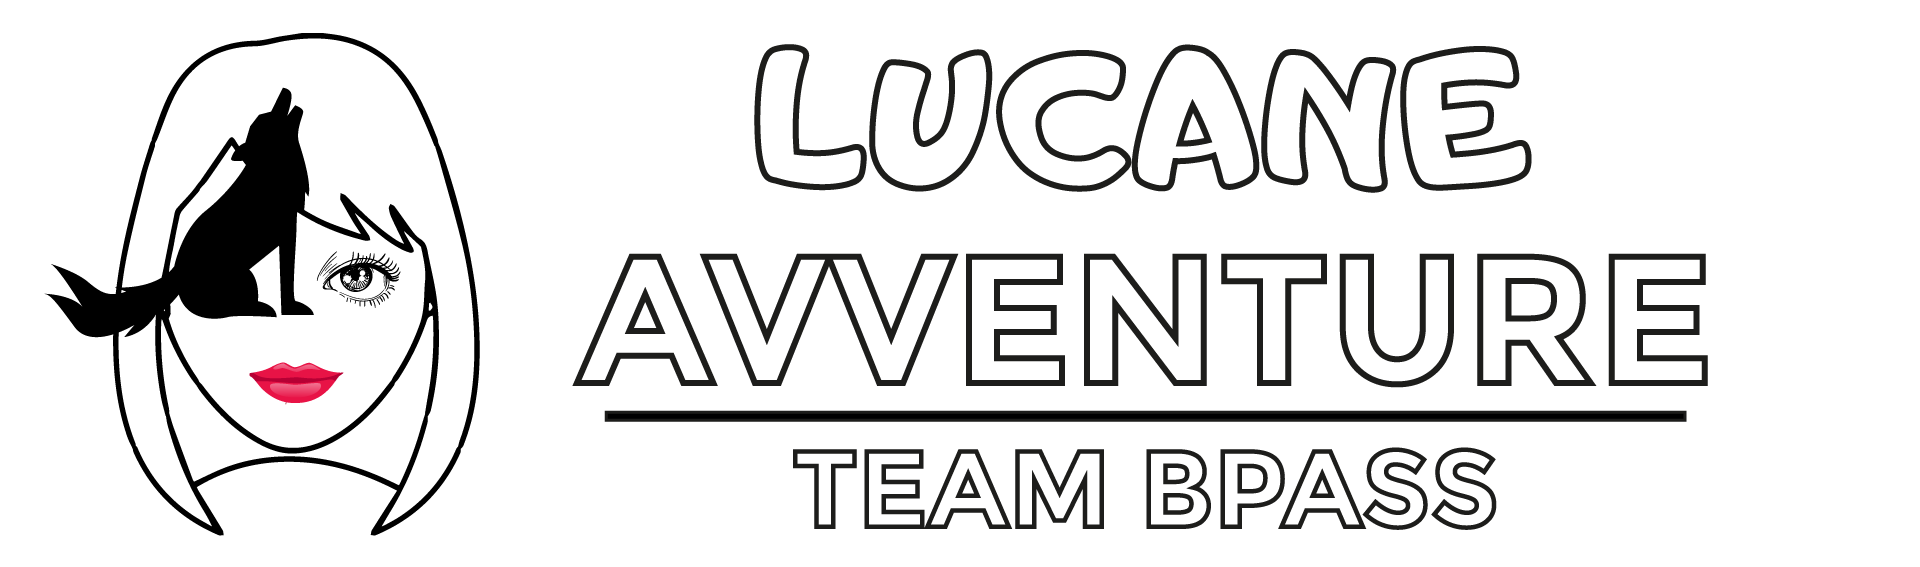 Lucane Avventure – Team BPASS